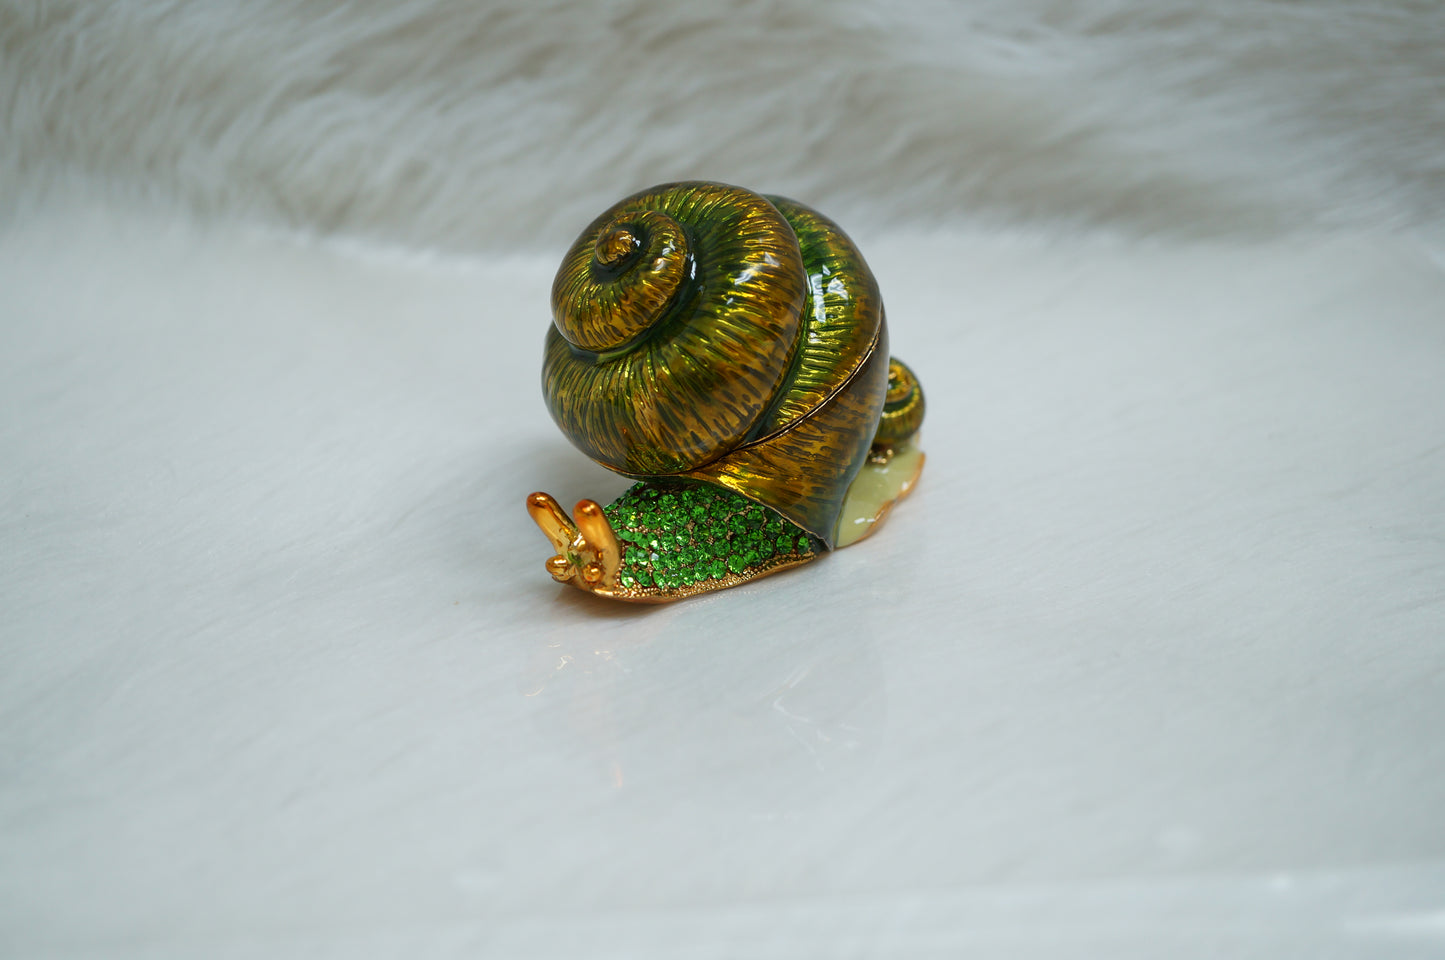 Cristiani Collezione Large Green Snail Trinket Box.